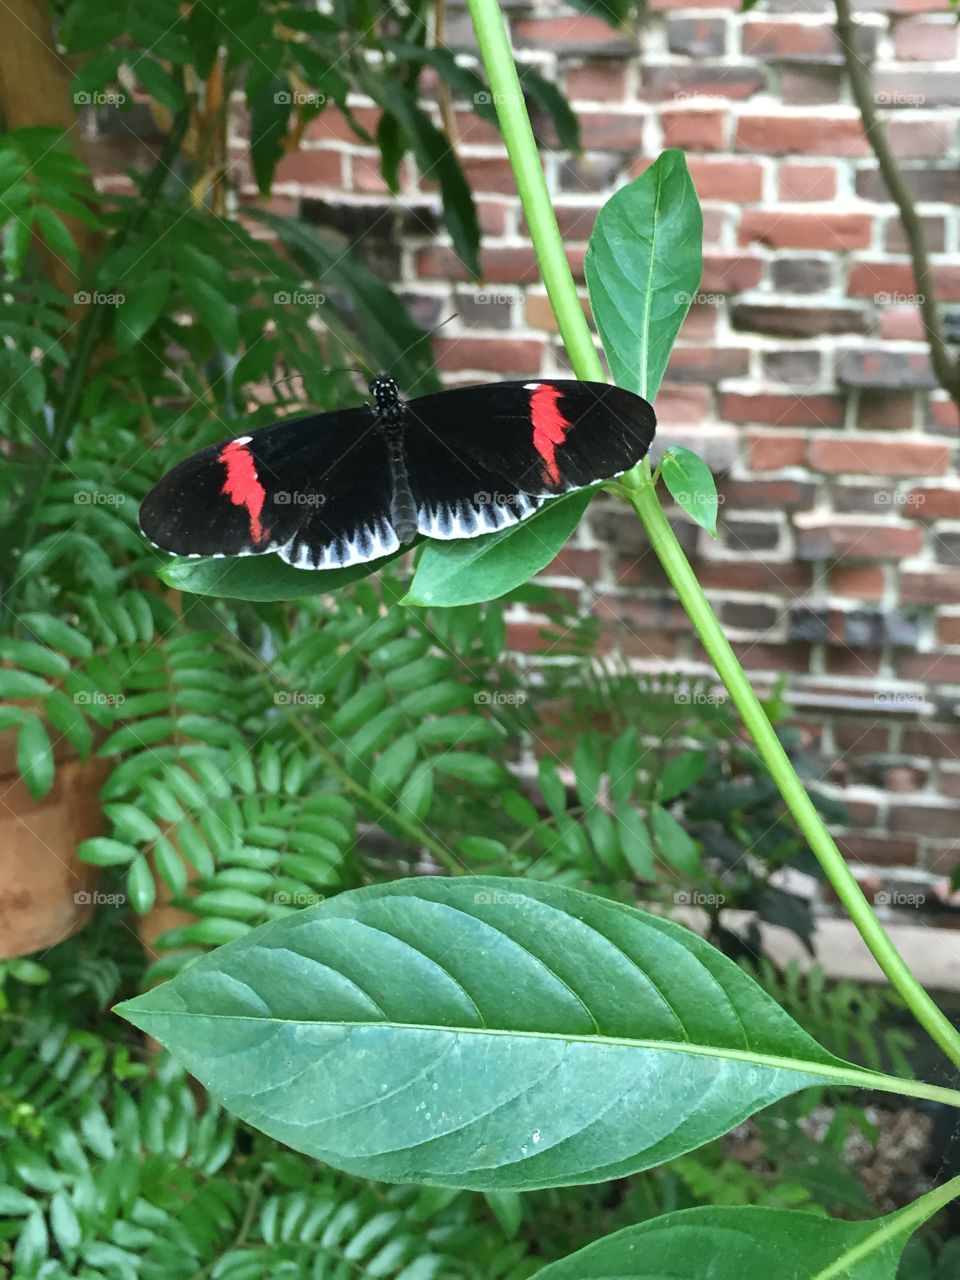 Butterfly. Taken in Boston, MA